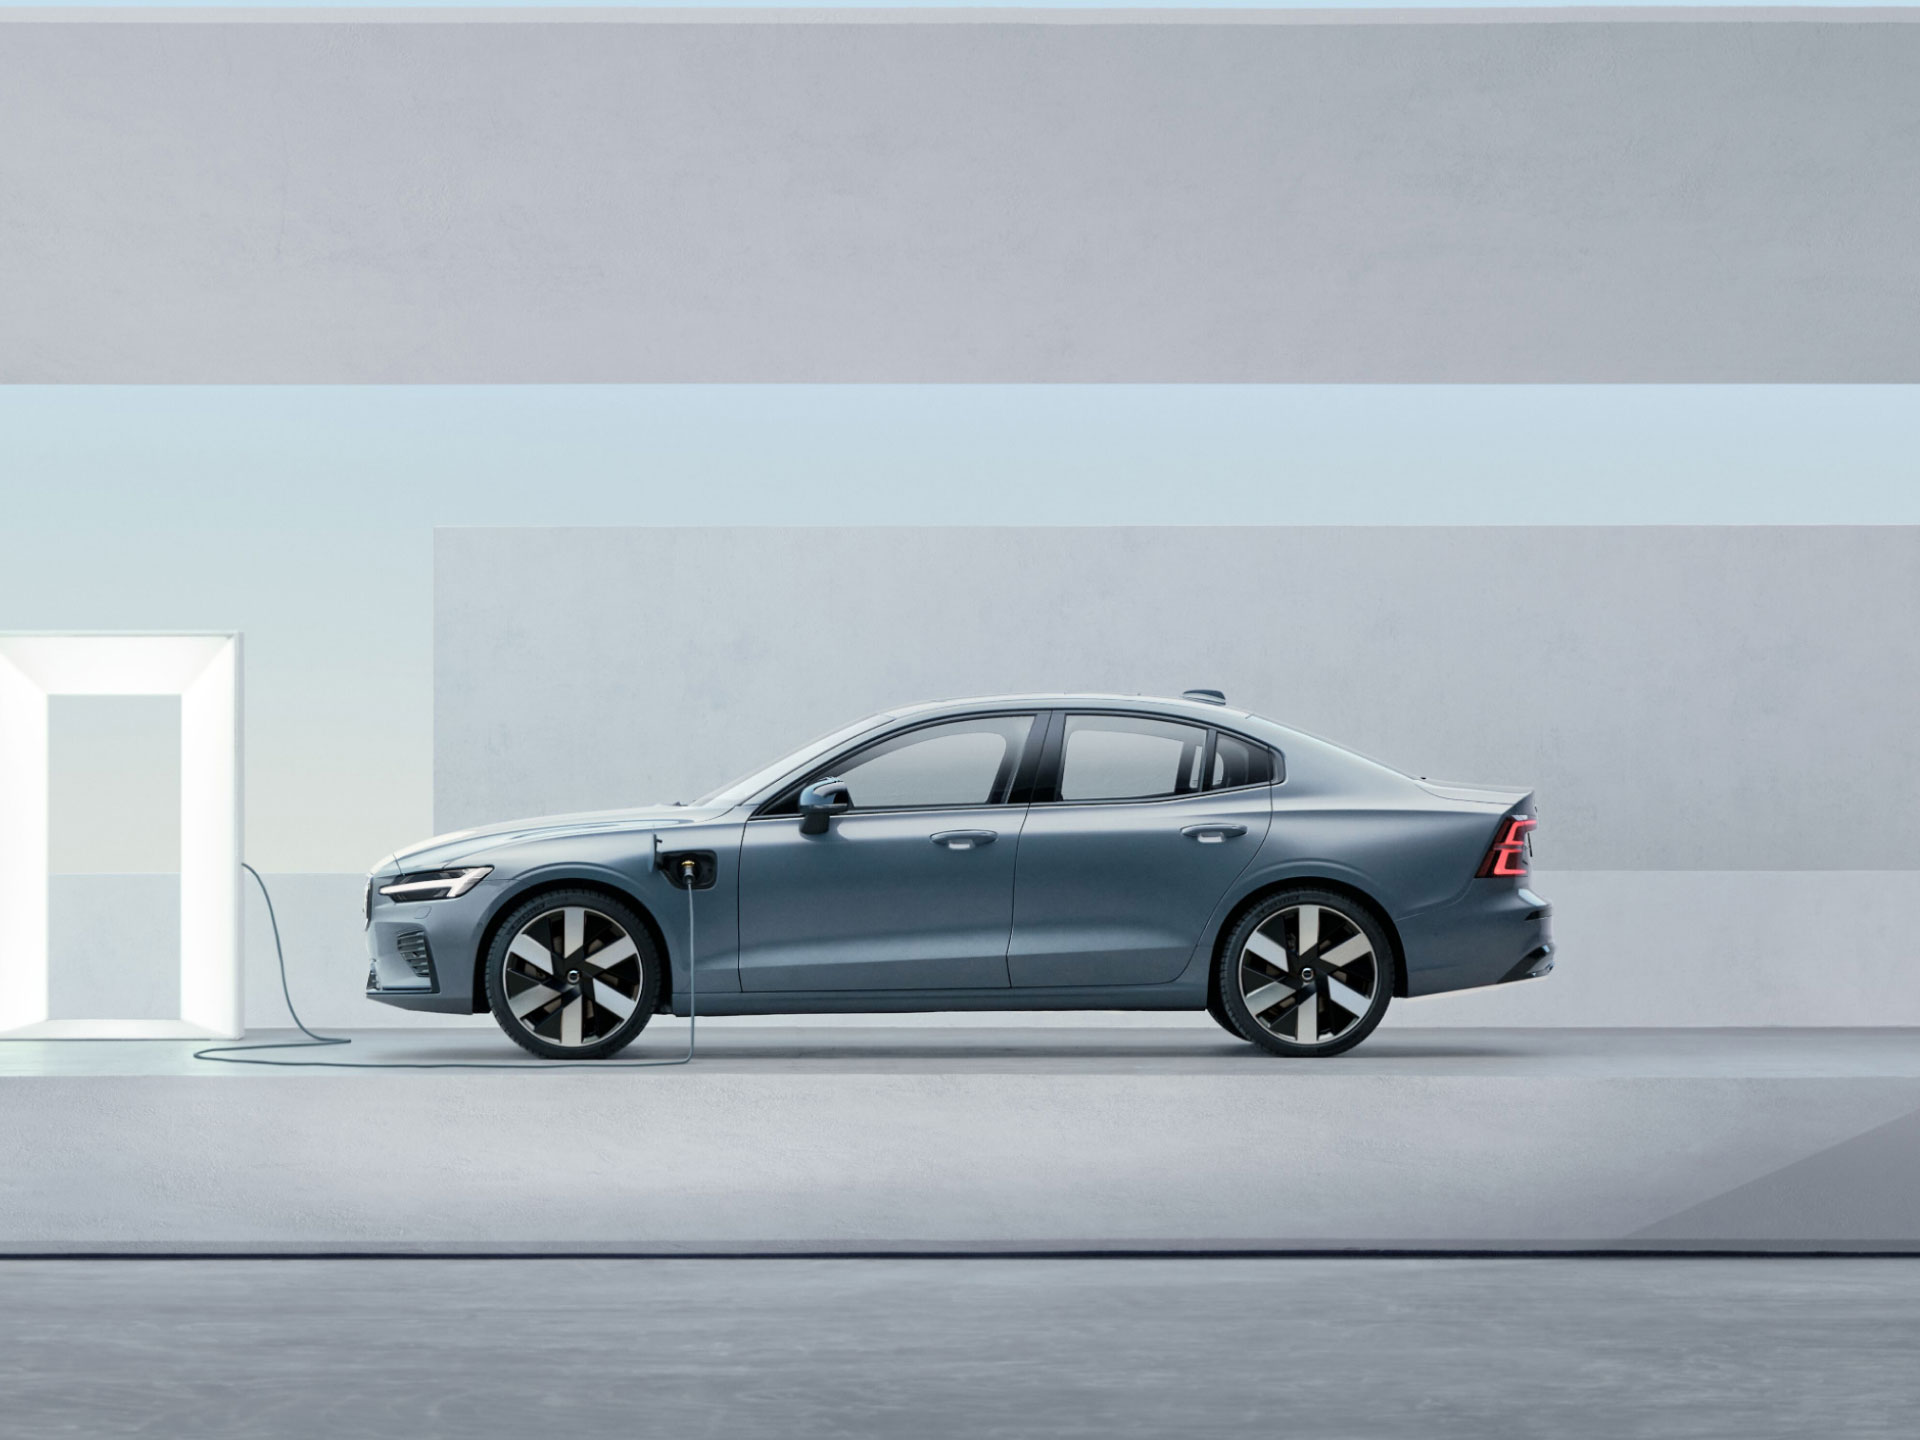 ภาพมุมกว้างด้านข้างของรถยนต์ซีดานระบบปลั๊กอินไฮบริดของ Volvo ขณะเสียบสายอยู่กับเครื่องชาร์จ